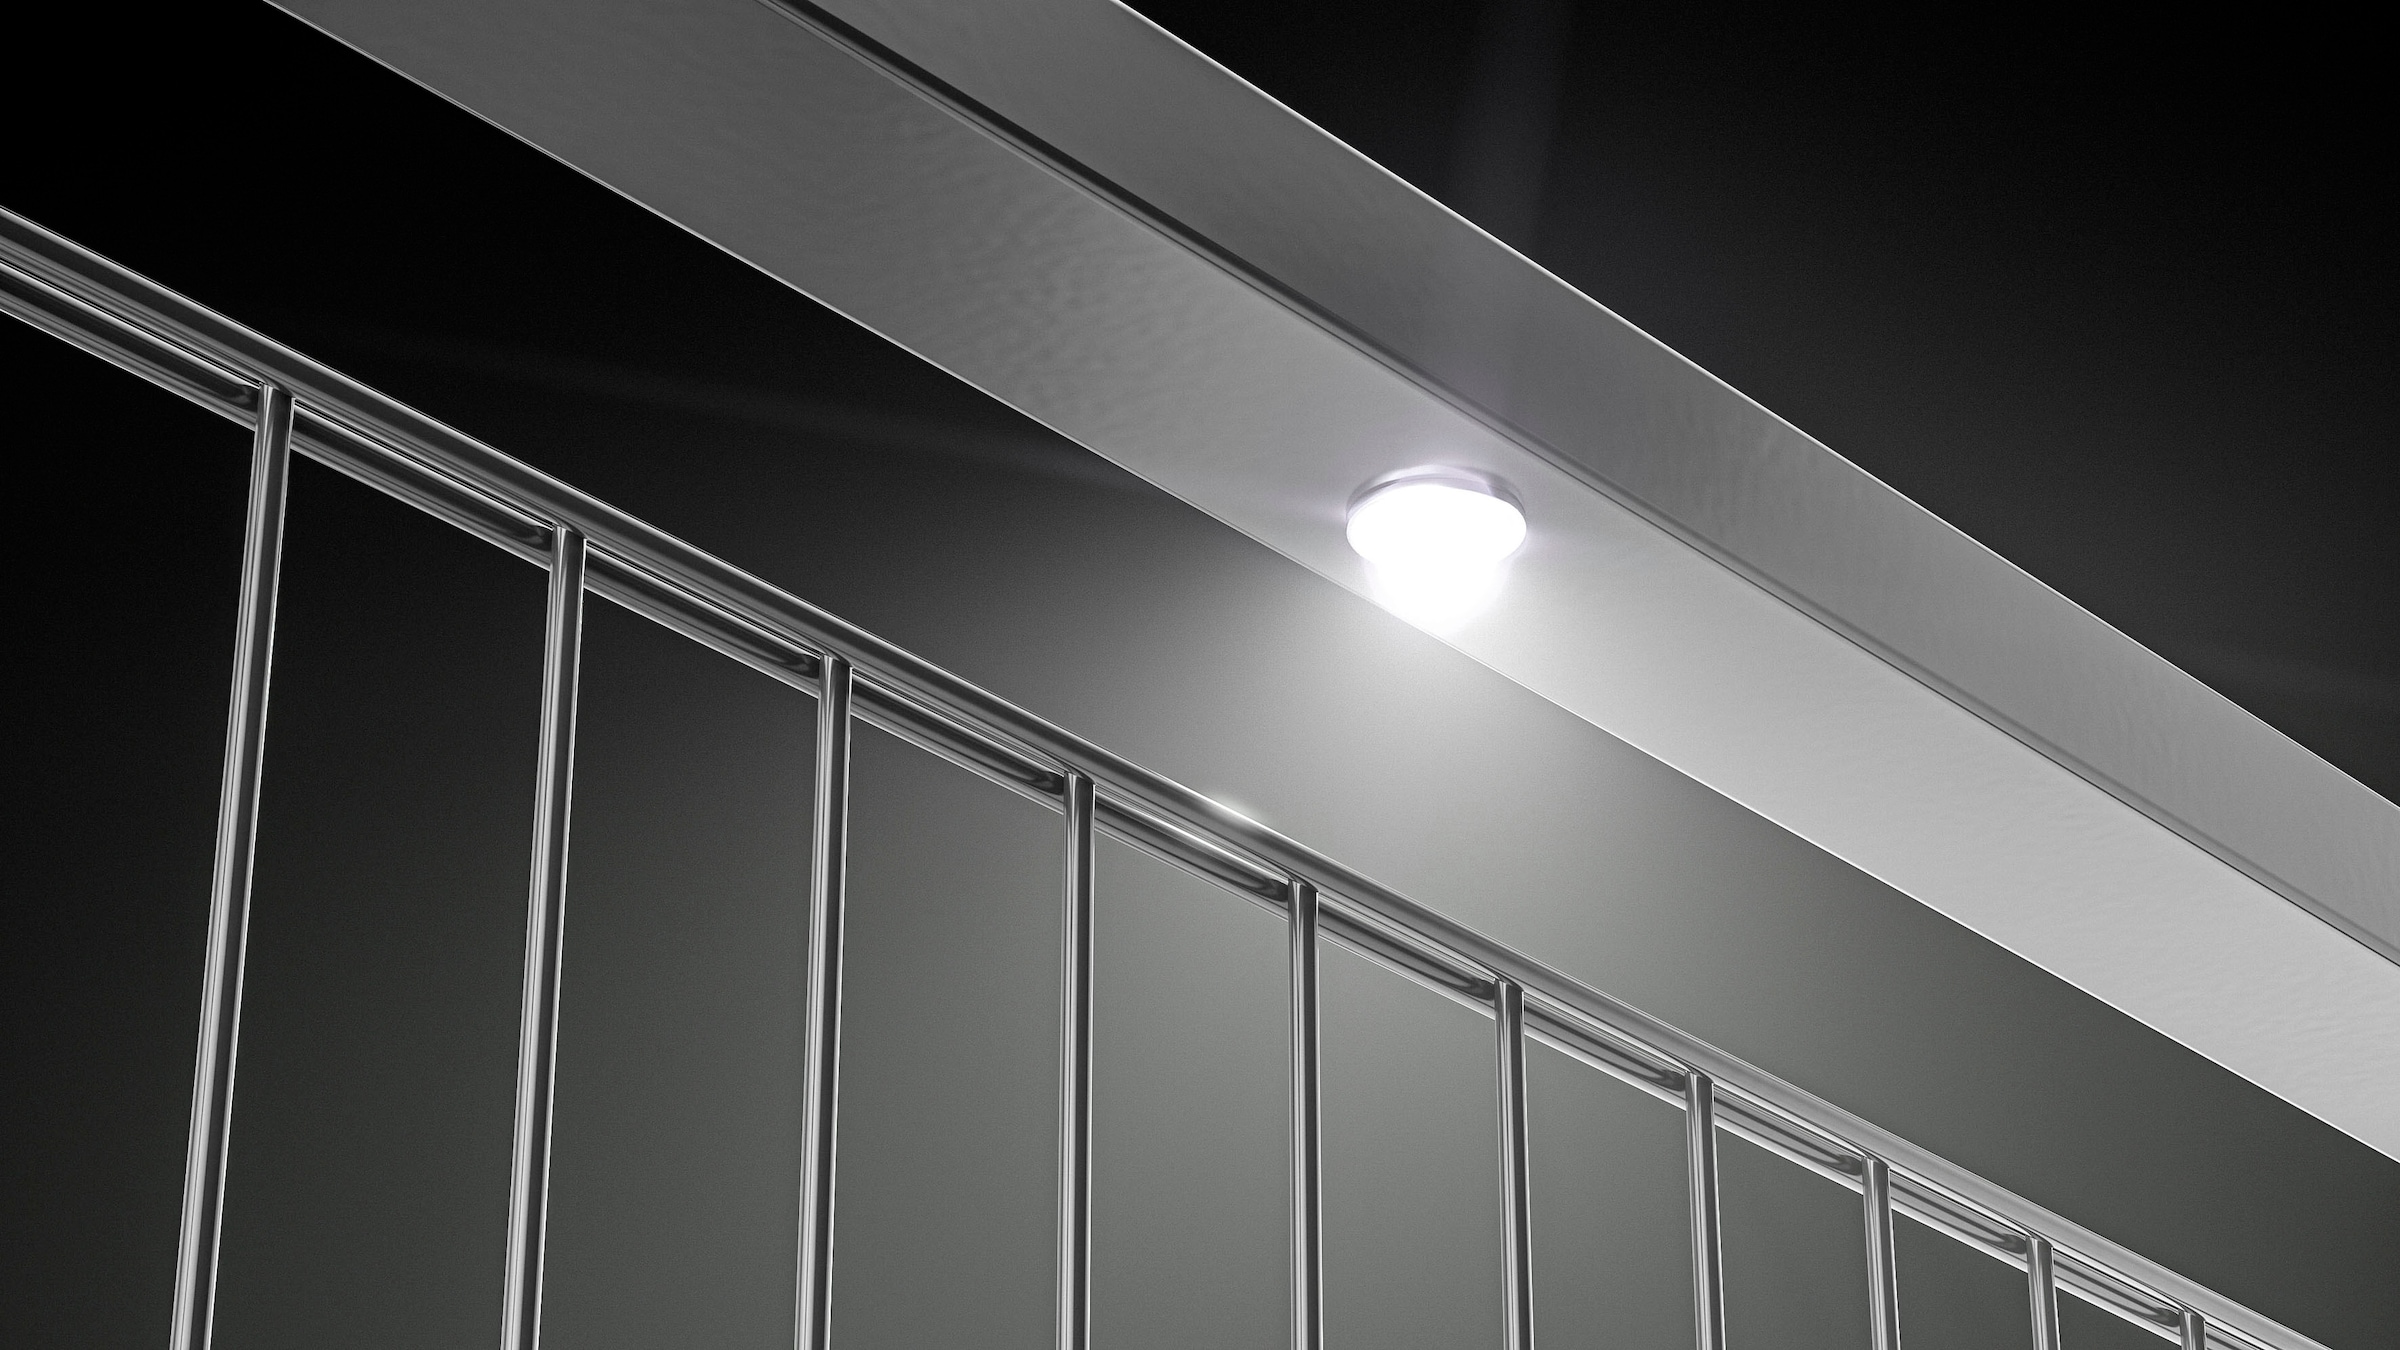 Alberts LED Einbauleuchte "Lichtsystem Highlight", aufsteckbar, mit 7 Leuchtmittenl für 14 m Zaunlänge